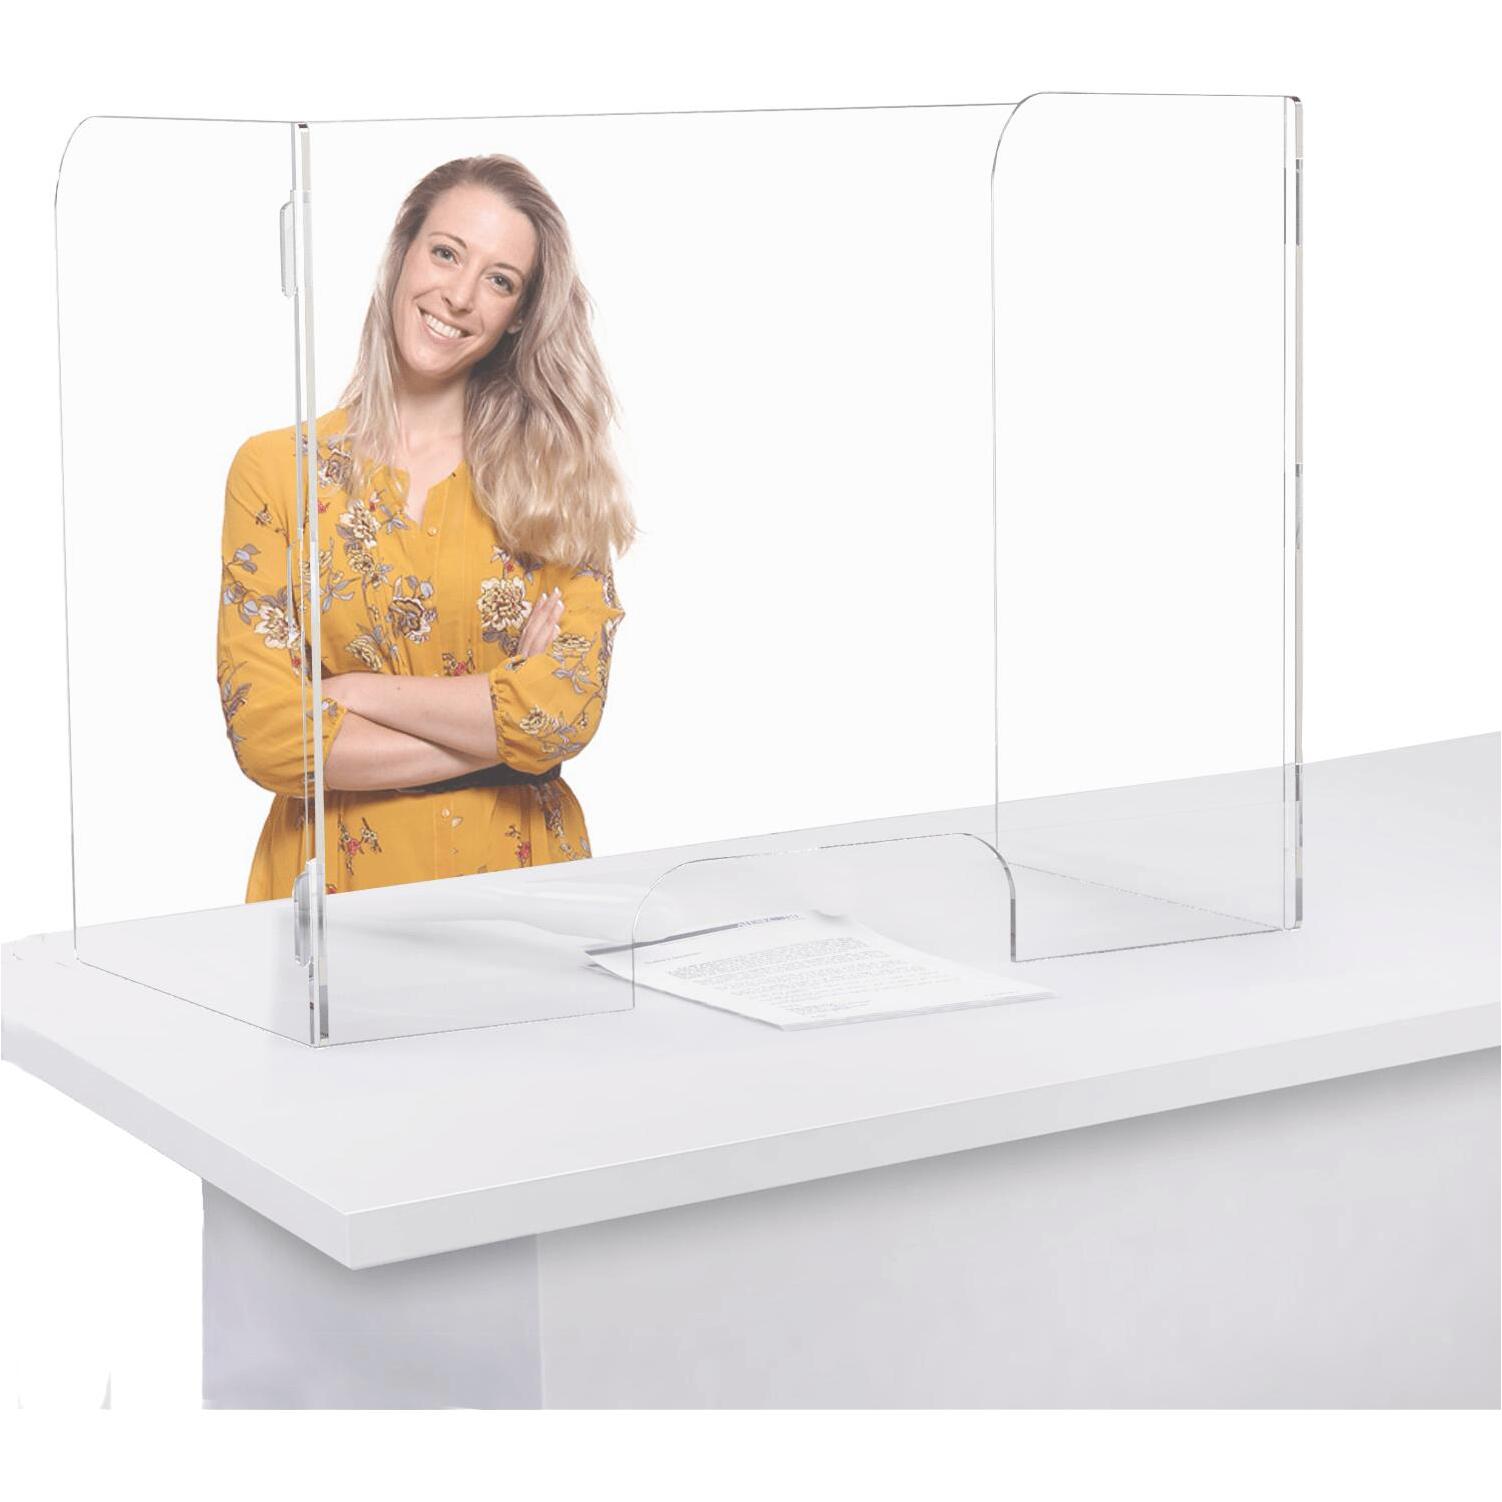 Przezroczyste akrylowe blaty stołowe z przegrodą na ekran z osłonami przeciwkaszlowymi chroniącymi przed kichaniem